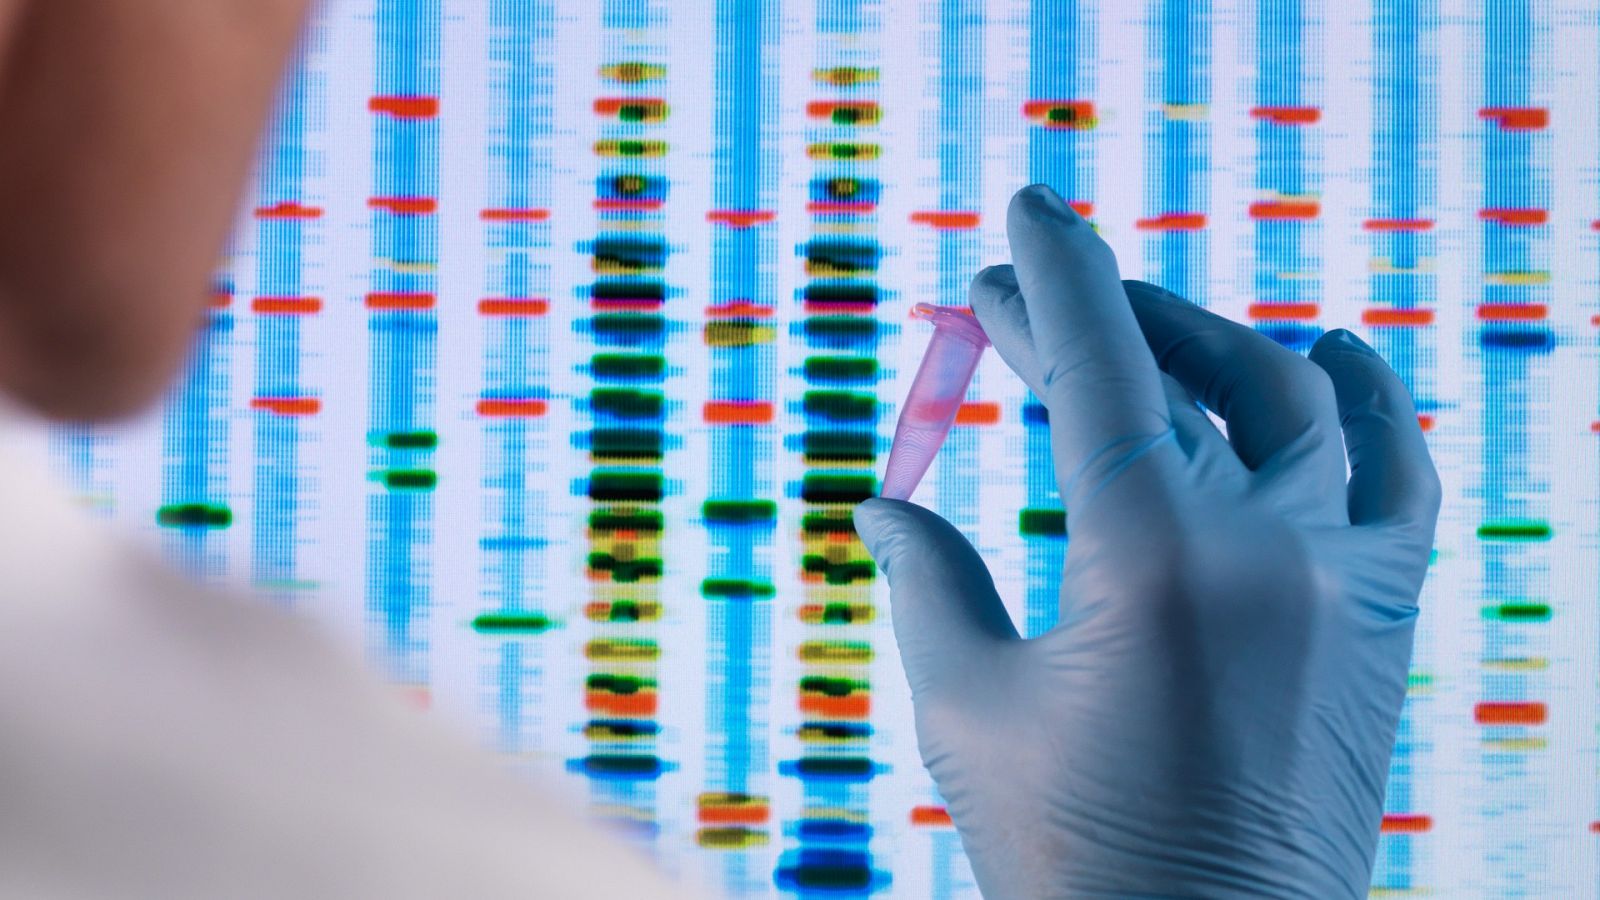 Proteínas milenarias para editar el ADN humano y curar enfermedades